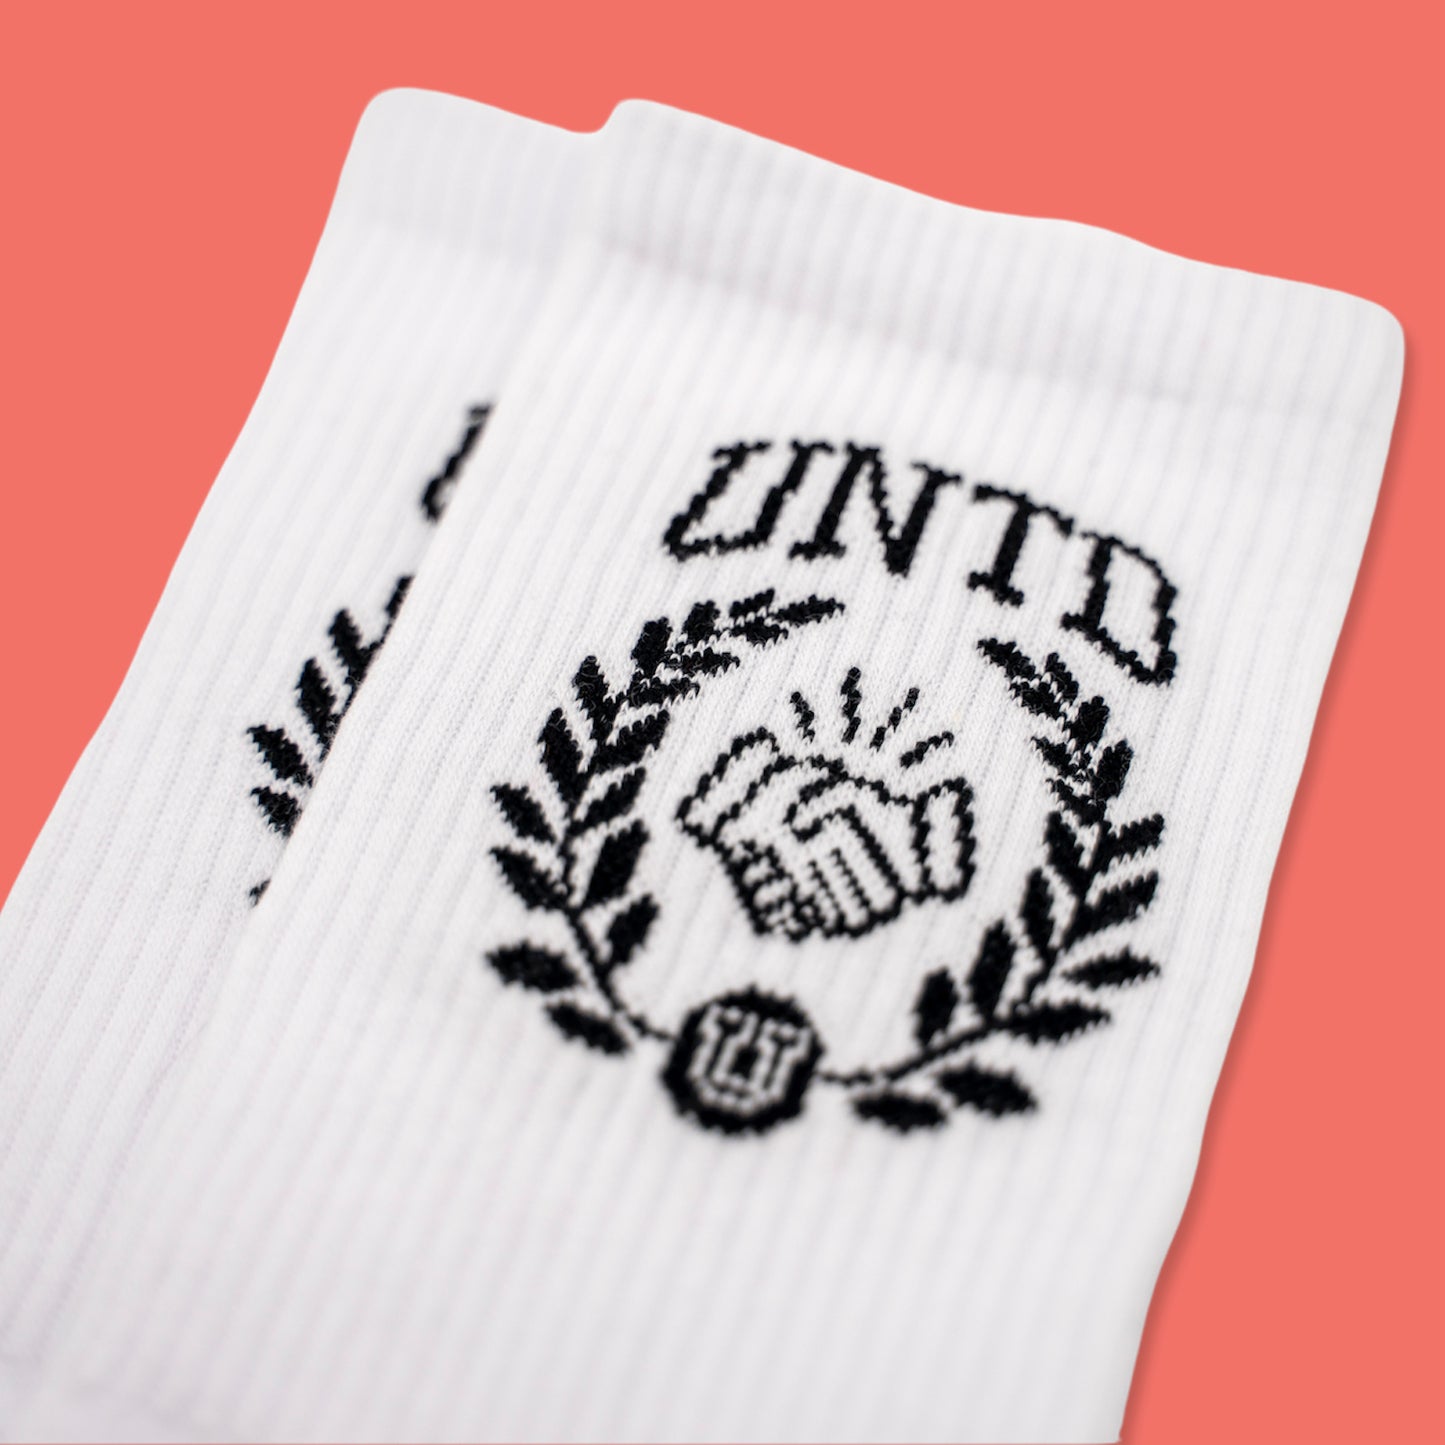 UNTD Collegiate Crew Socks - UNTD